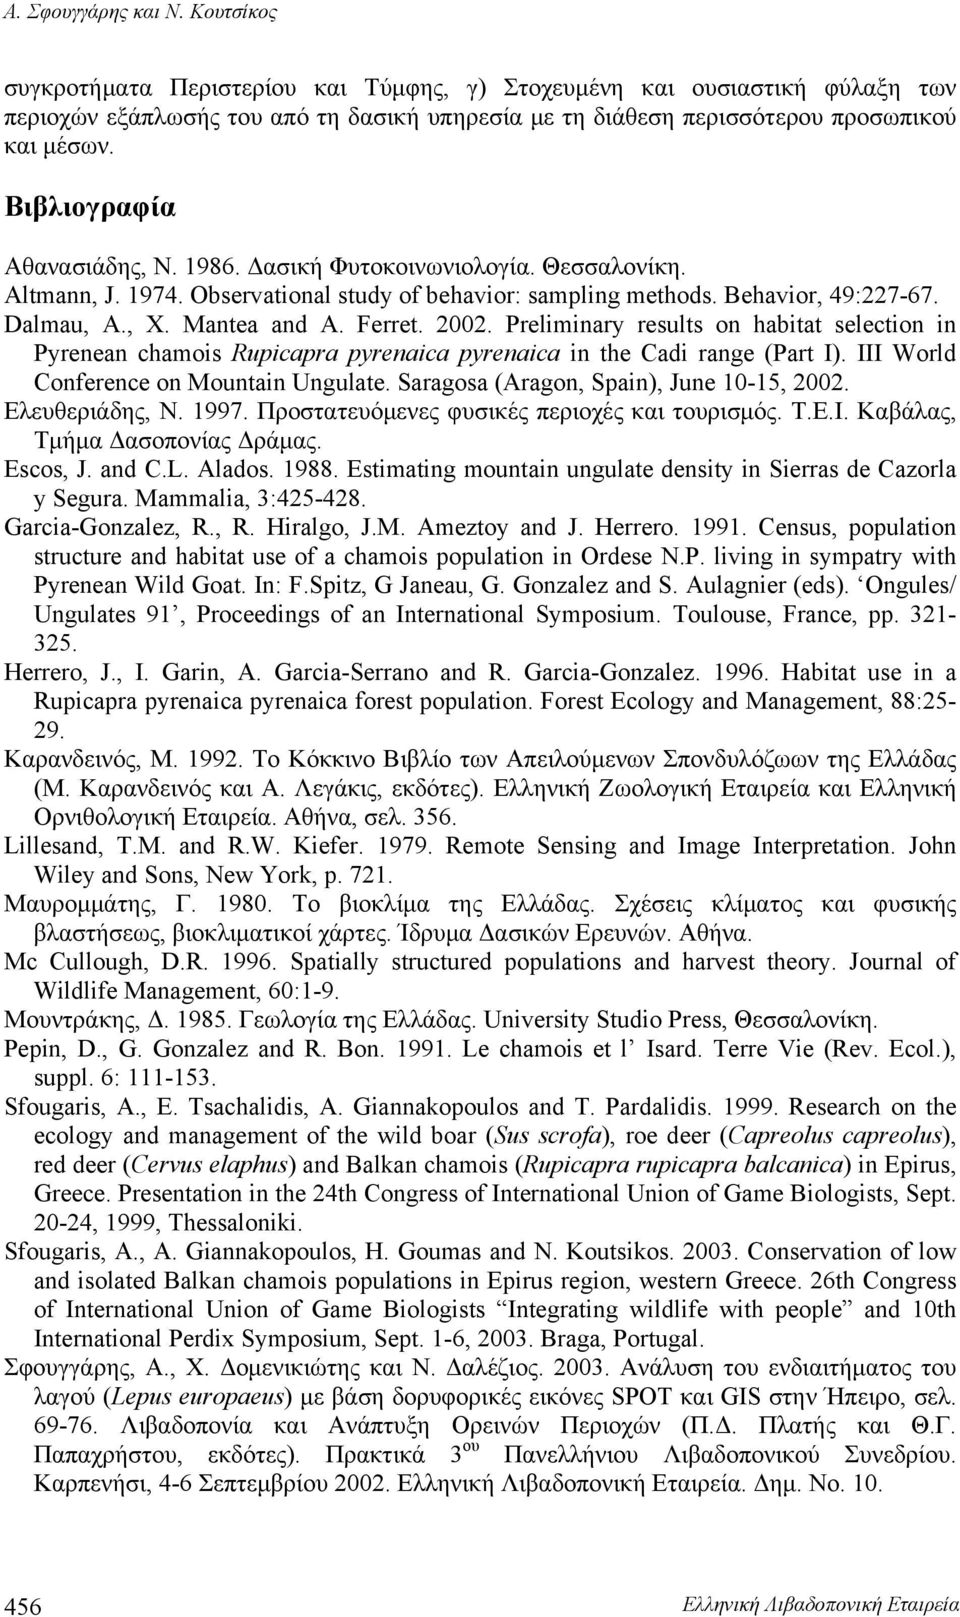 Βιβλιογραφία Αθανασιάδης, Ν. 1986. Δασική Φυτοκοινωνιολογία. Θεσσαλονίκη. Altmann, J. 1974. Observational study of behavior: sampling methods. Behavior, 49:227-67. Dalmau, A., X. Mantea and A. Ferret.